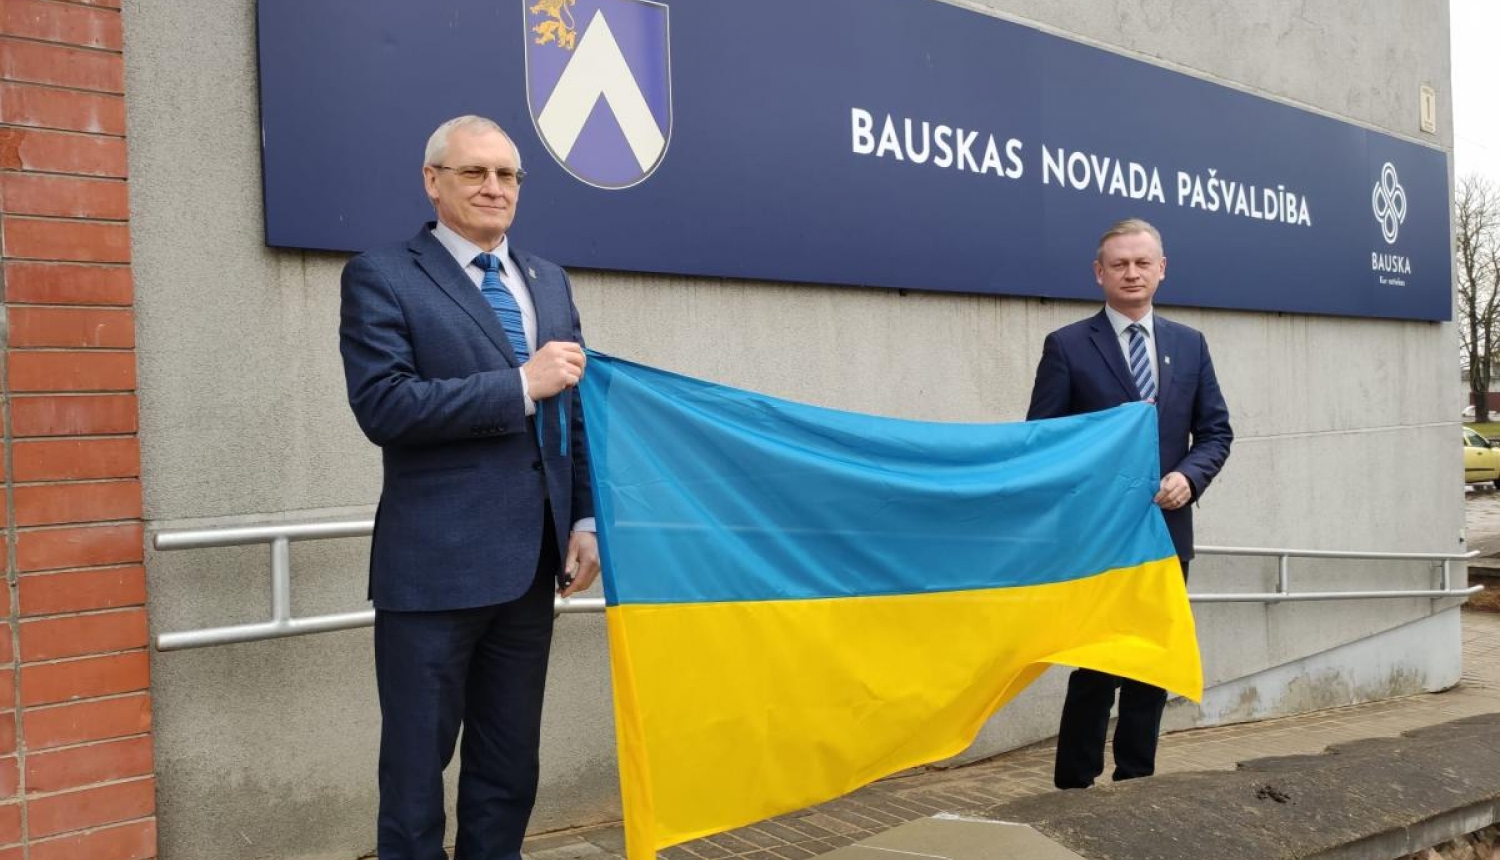 Bauskas novada pašvaldība pauž atbalstu Ukrainai